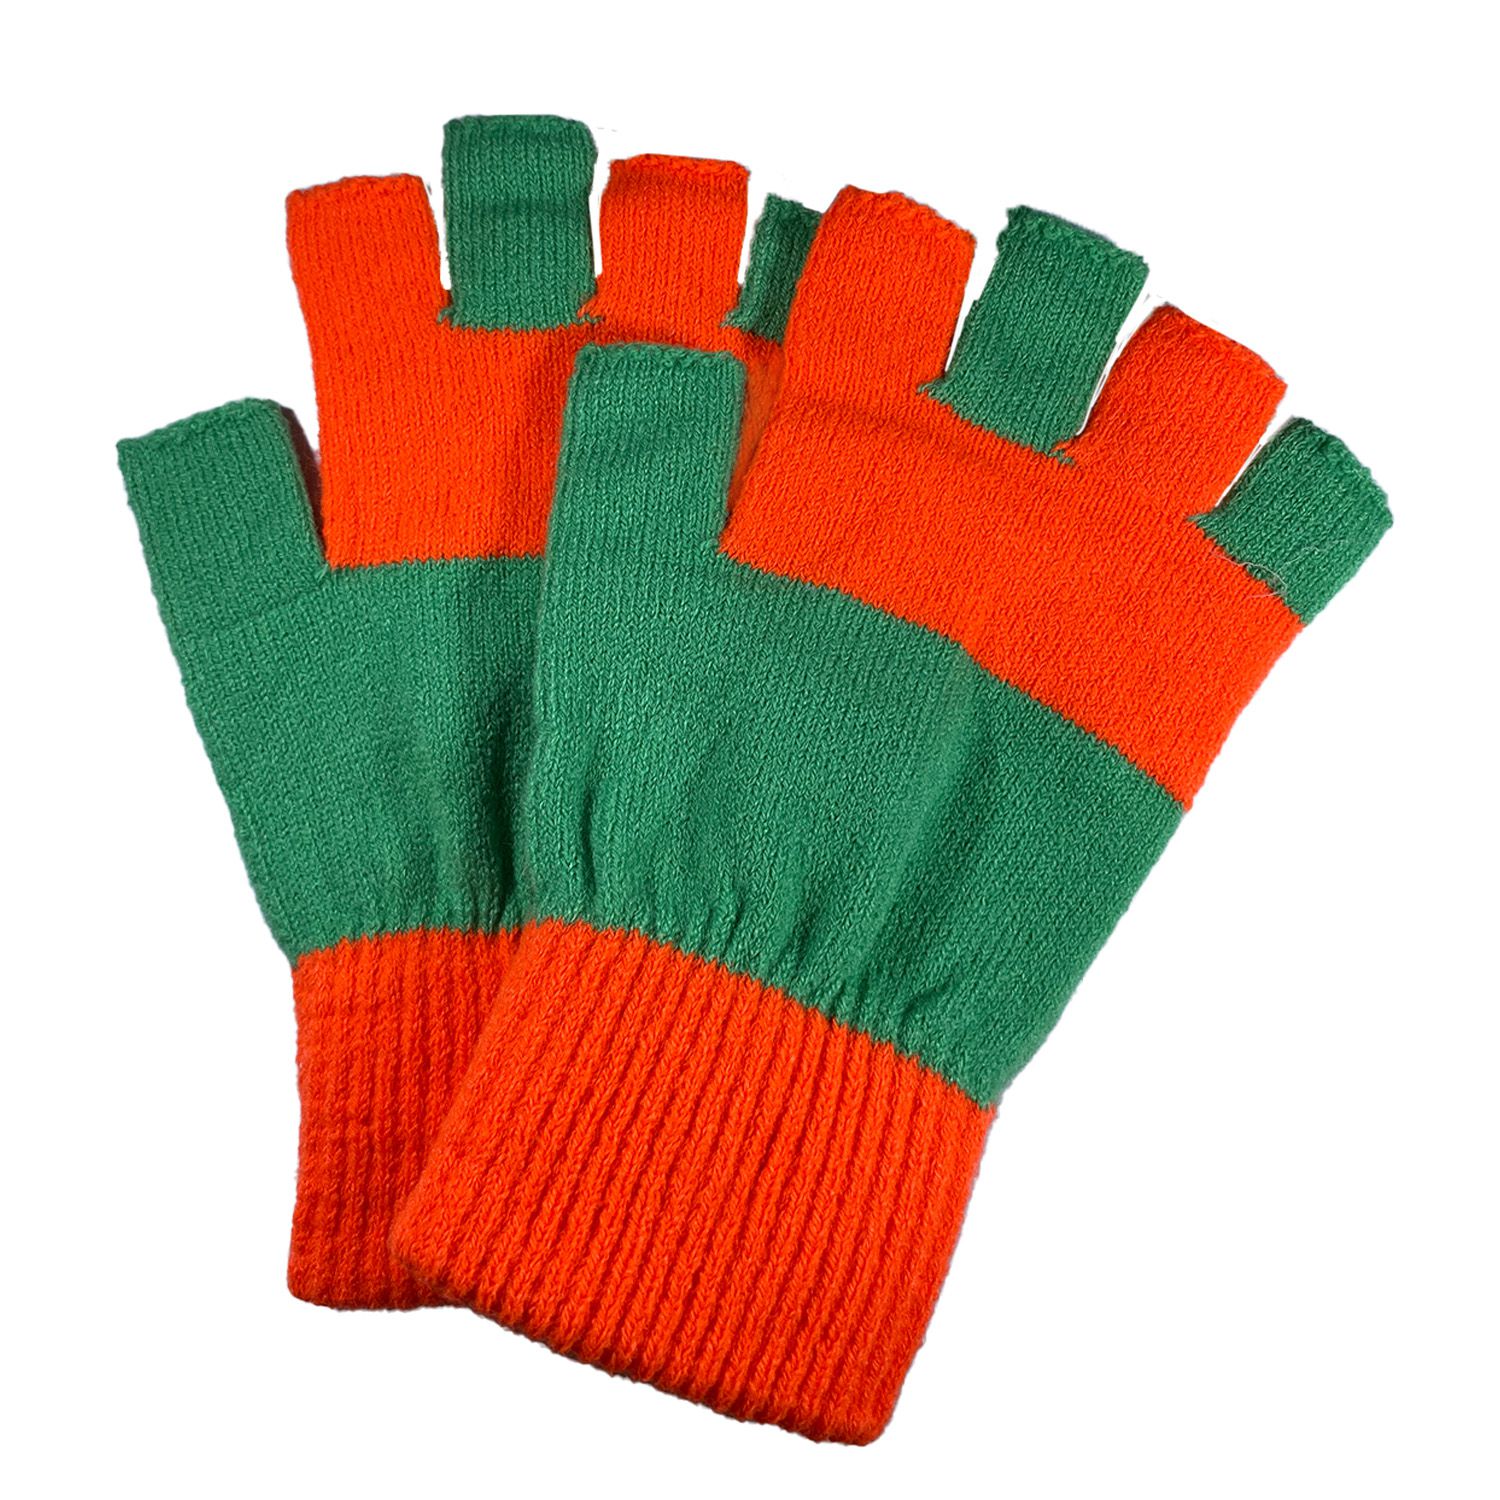 Kruikenstad handschoenen kopen